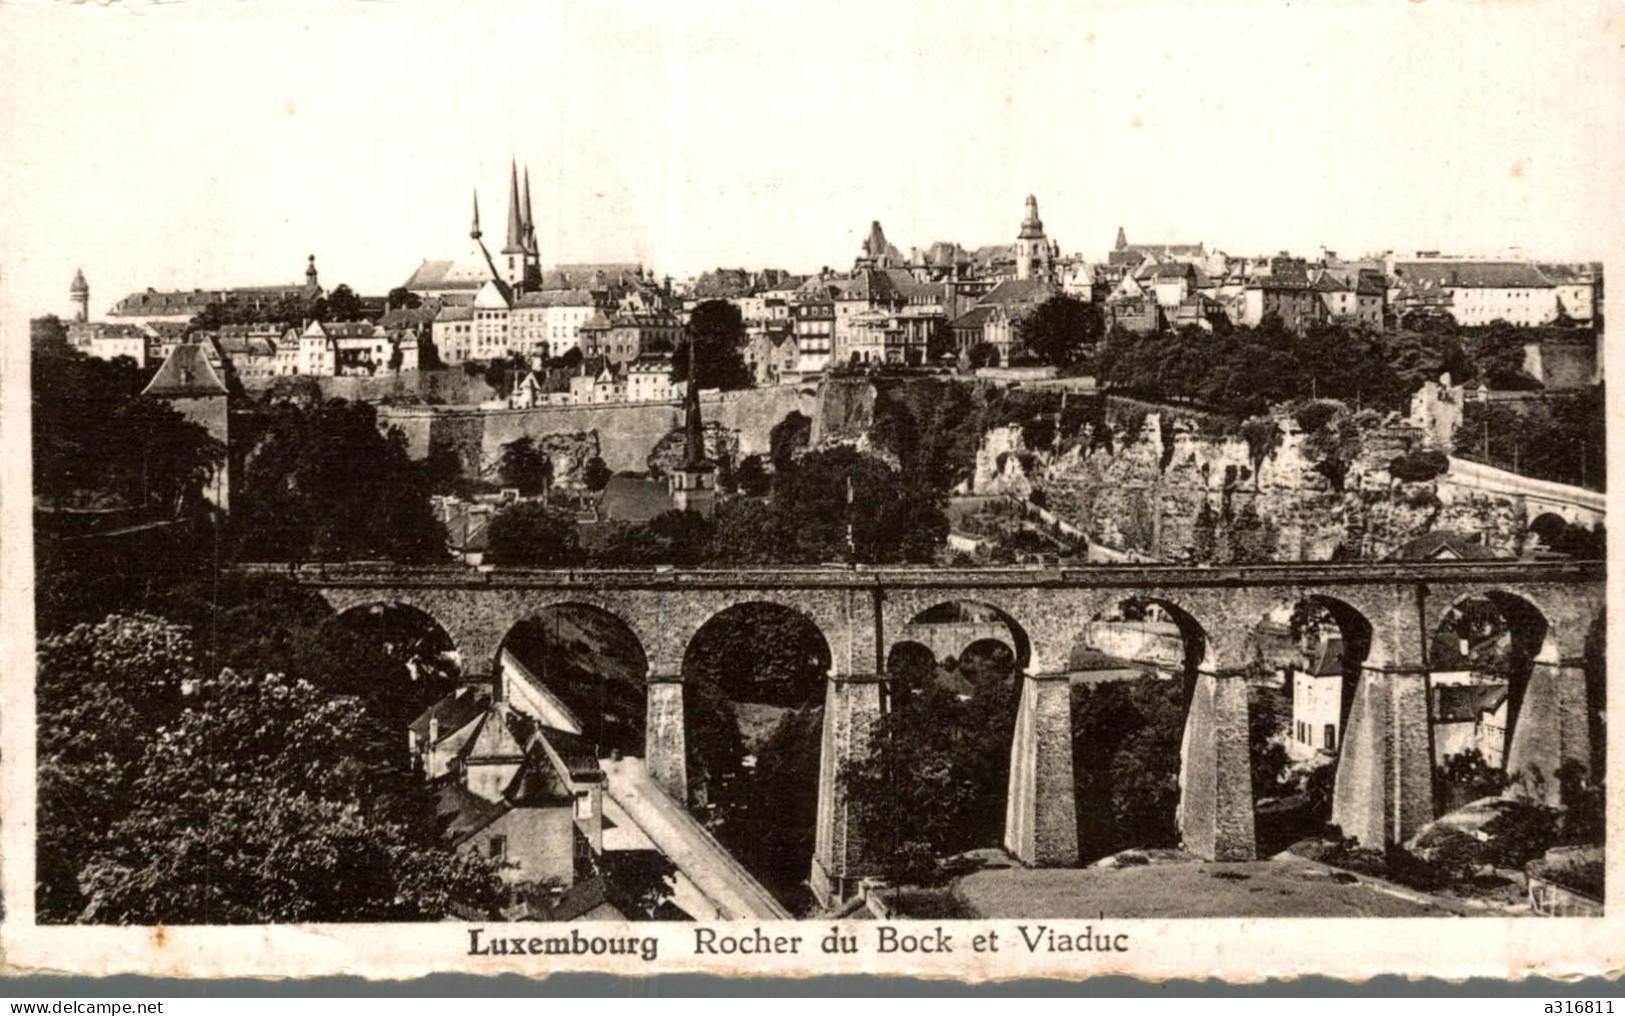 Luxembourg Rocher Du Bock Et Viaduc - Luxemburg - Stadt